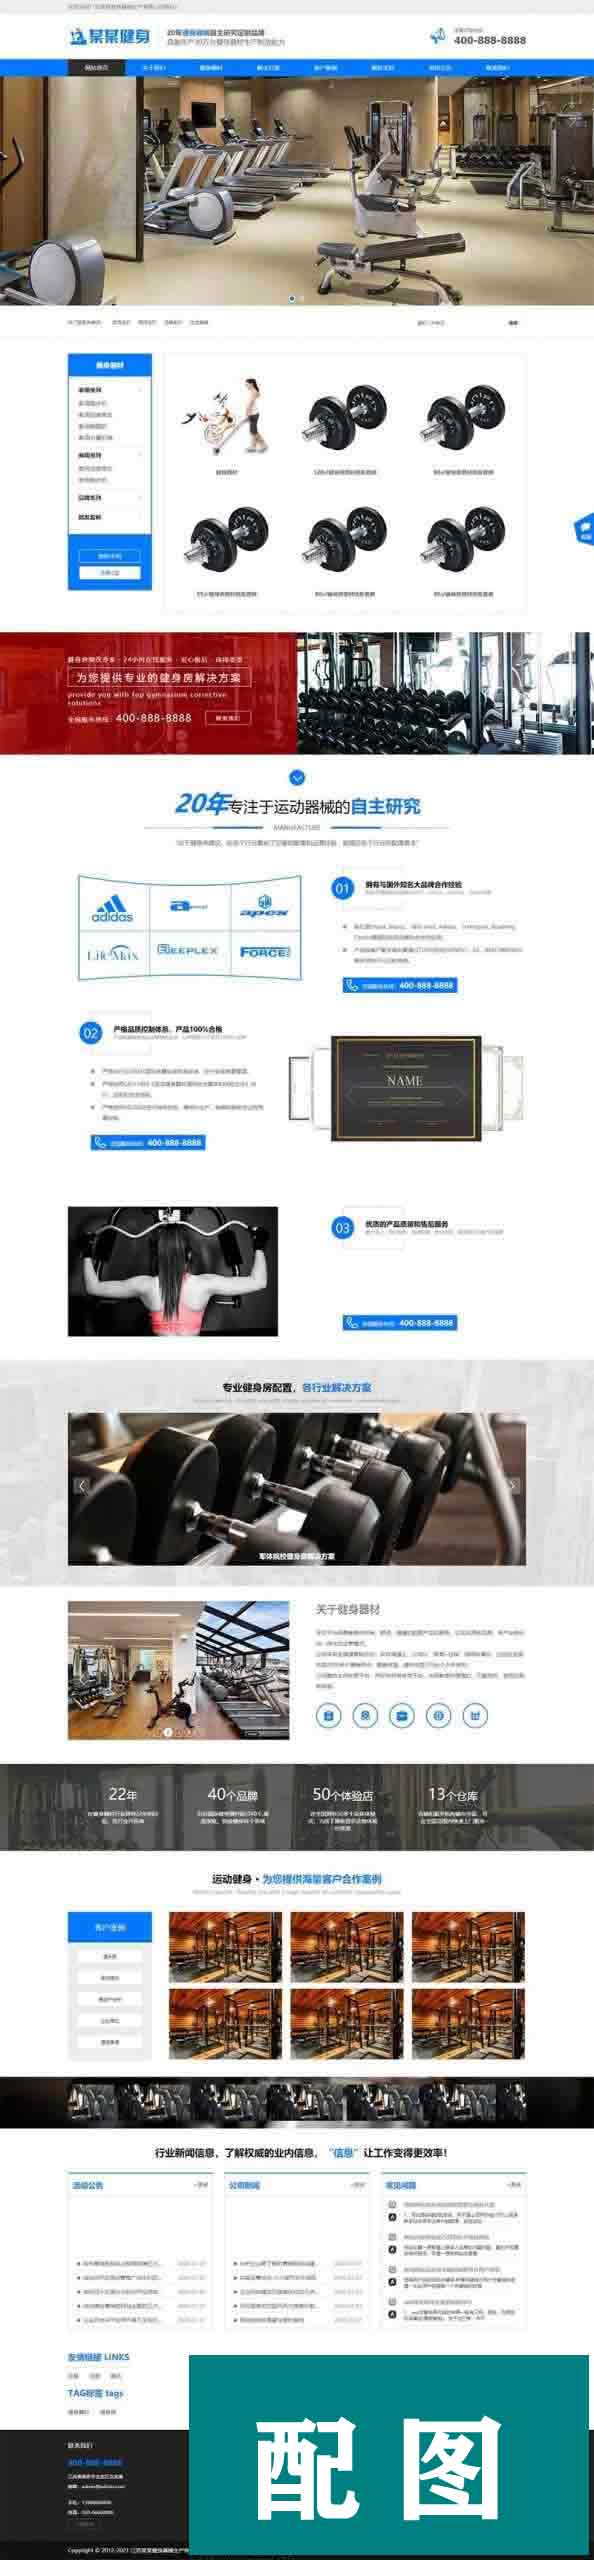 ym7854 织梦内核蓝色响应式营销型运动健身器械器材企业网站模板 带手机版-有用乐享